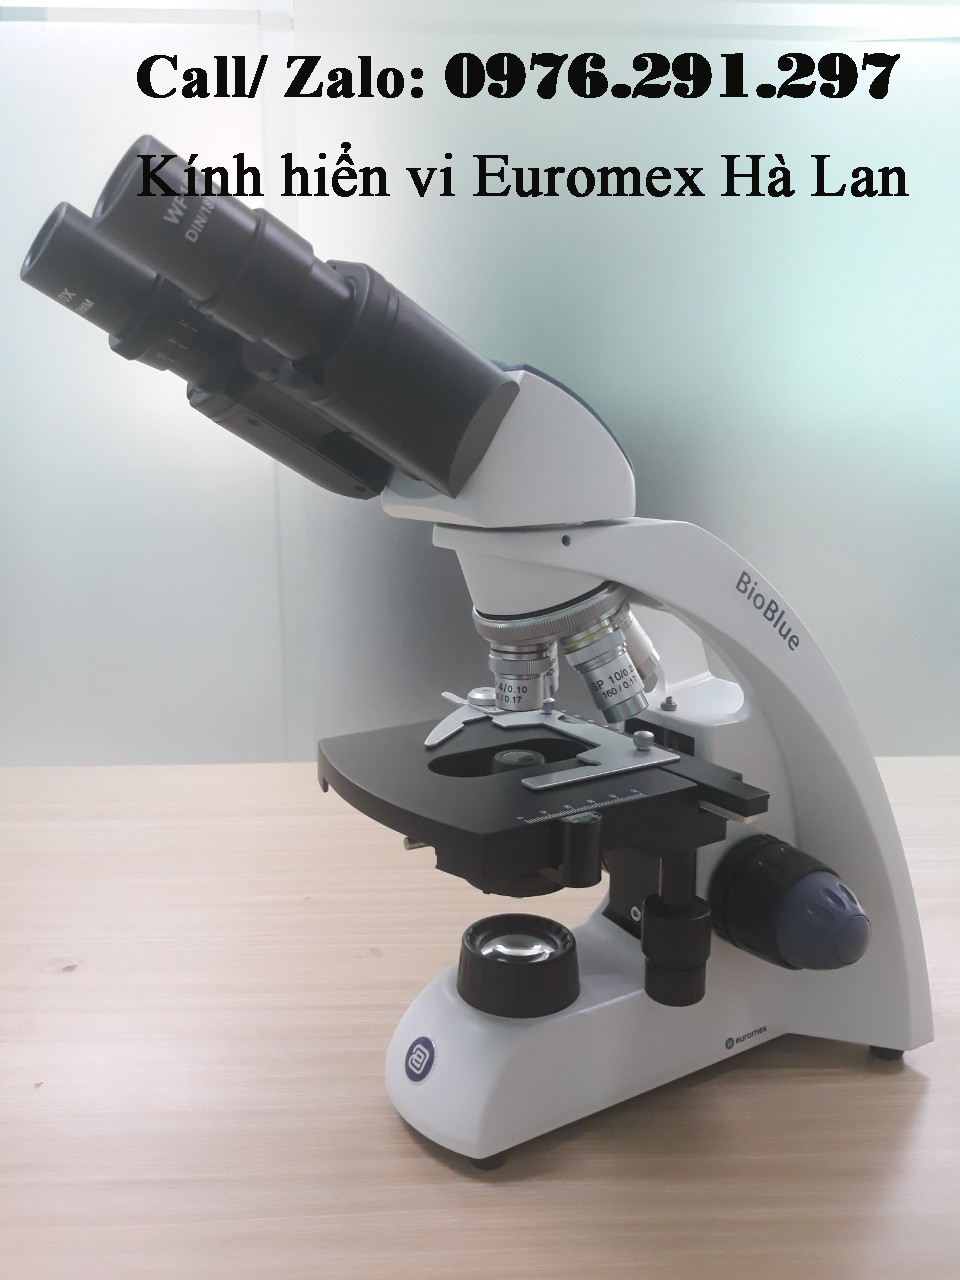 Kính hiển vi 2 mắt Bioblue BB4260 Euromex Hà Lan